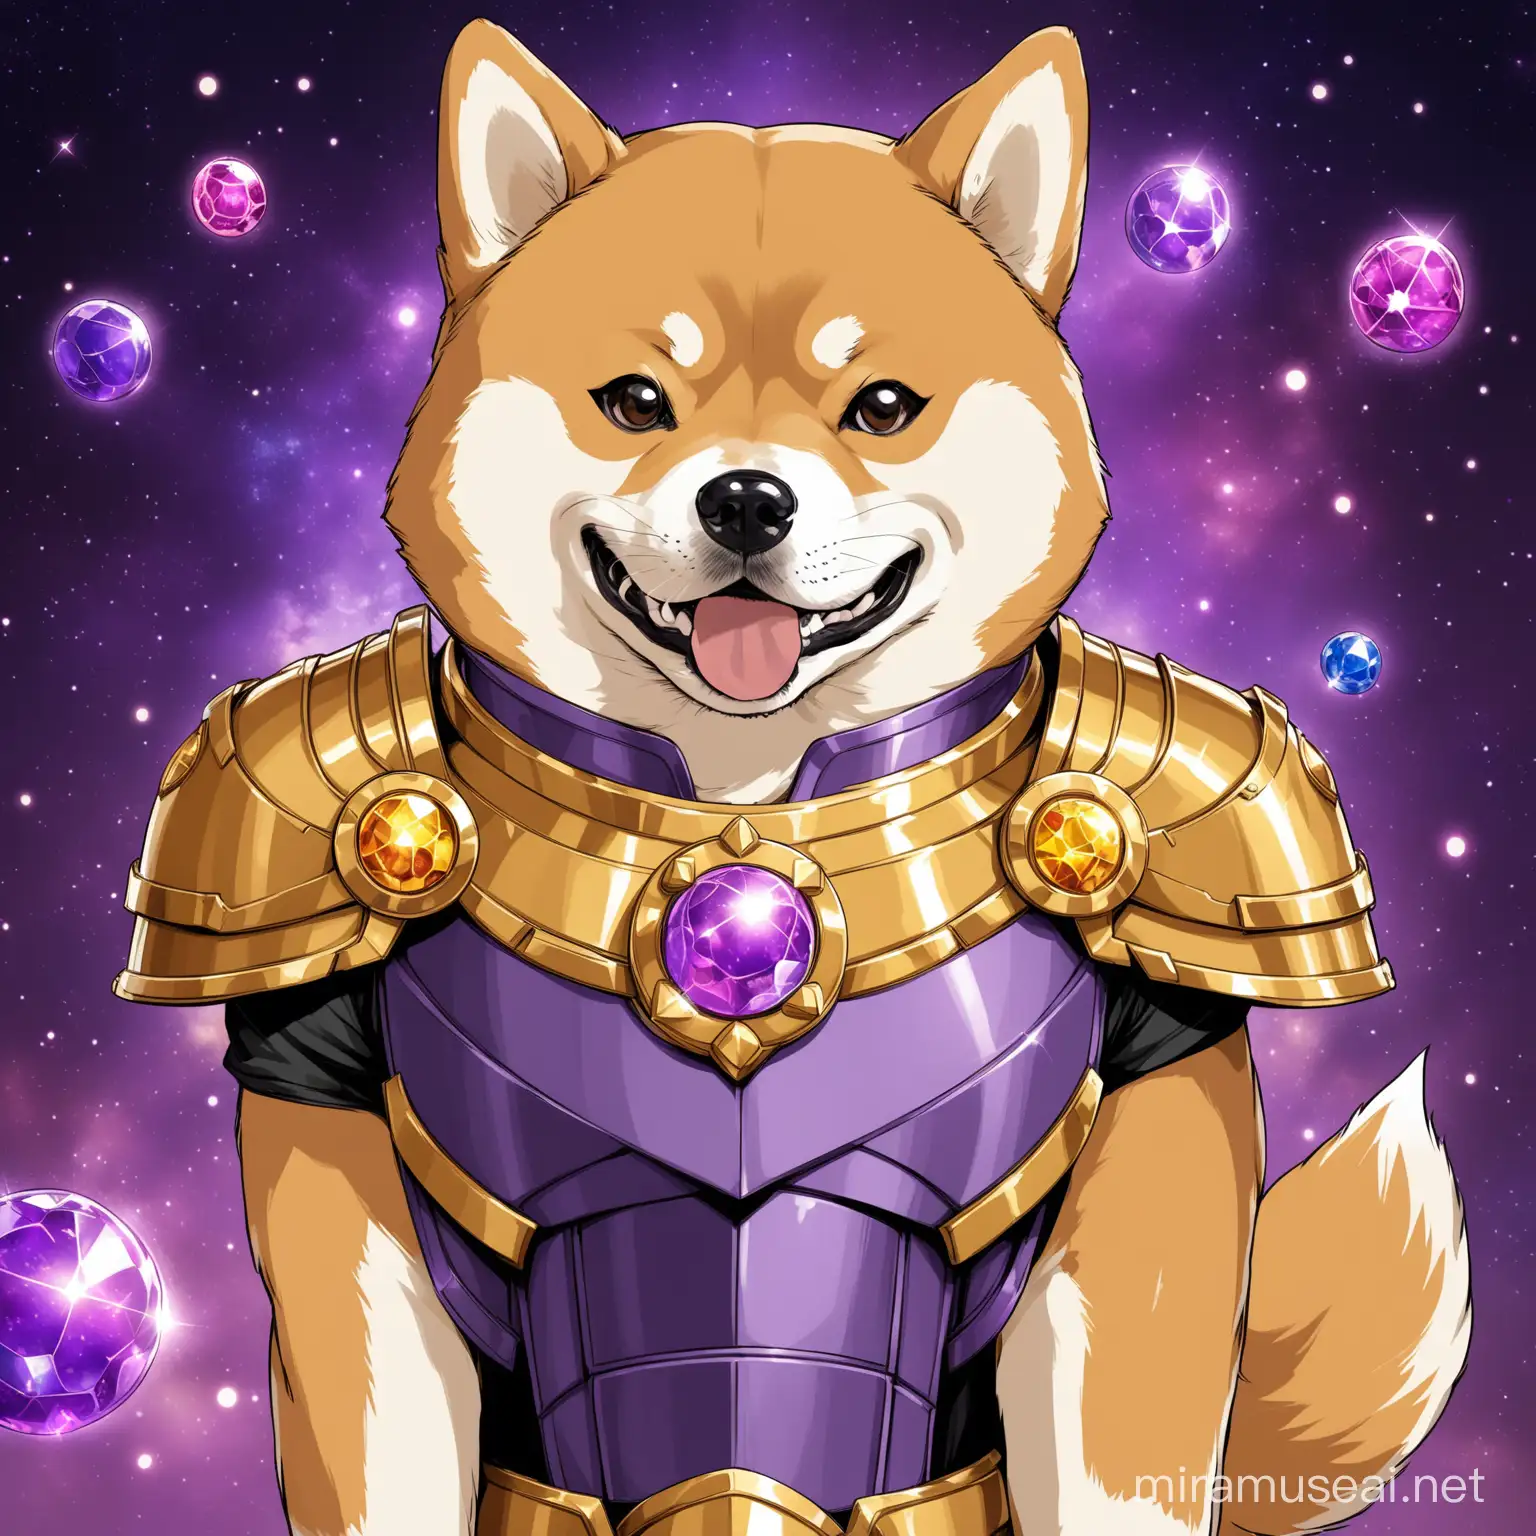 Crea un'illustrazione di un Shiba Inu con un'armatura ispirata a quella di Thanos, con dettagli come gemme dell'infinito al posto dei soliti ornamenti canini